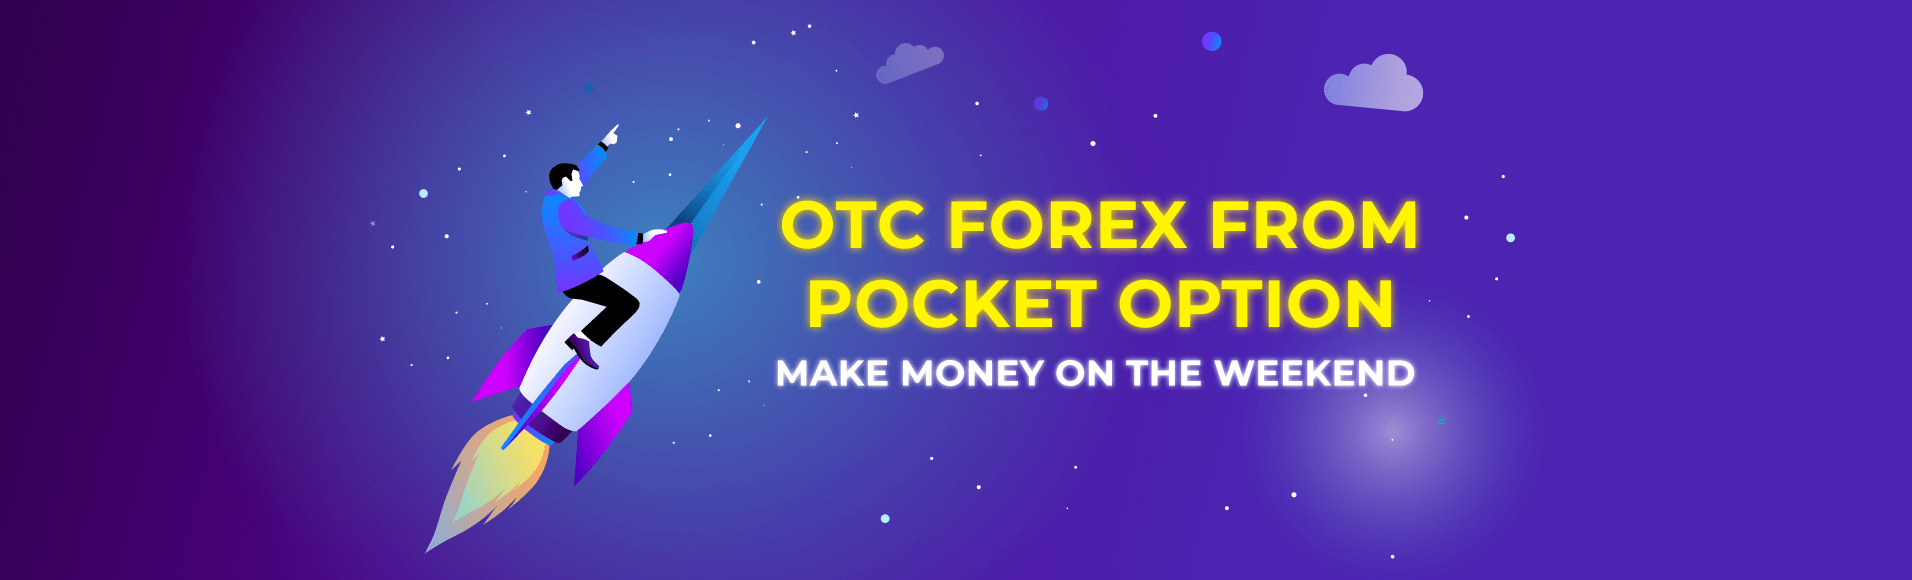 Pocket Option dan OTC Forex - hafta sonu para kazanın